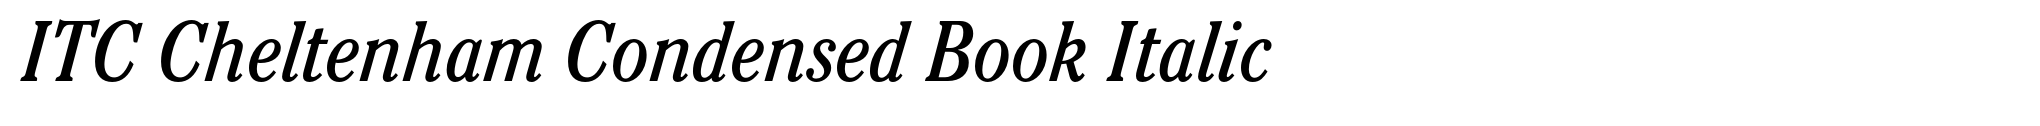 ITC Cheltenham Condensed Book Italic image